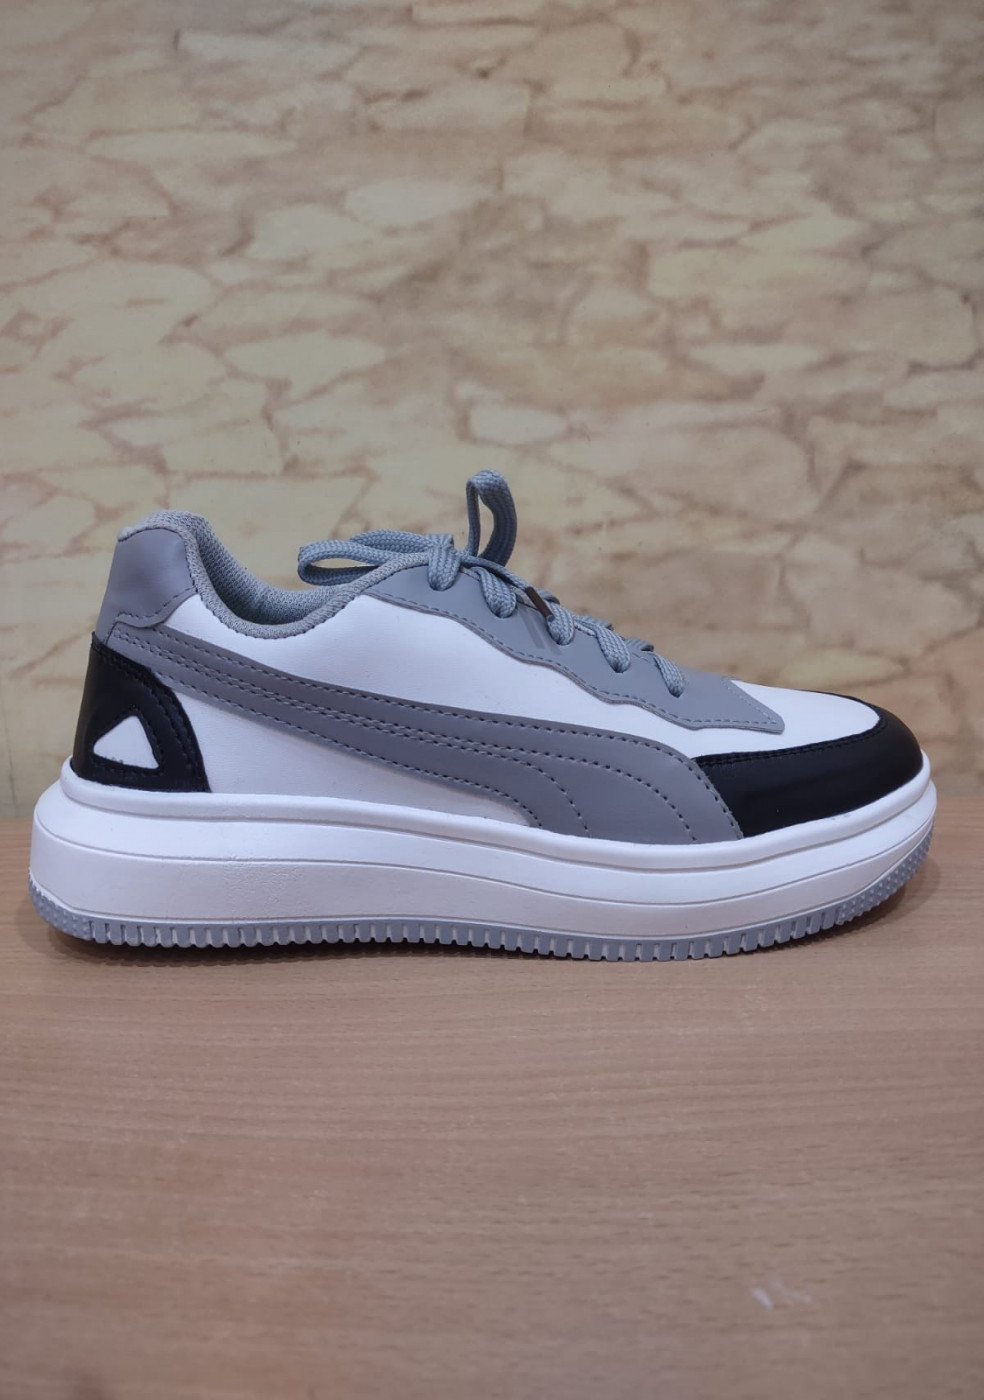 XSTOM White Gray Sneakers For Men